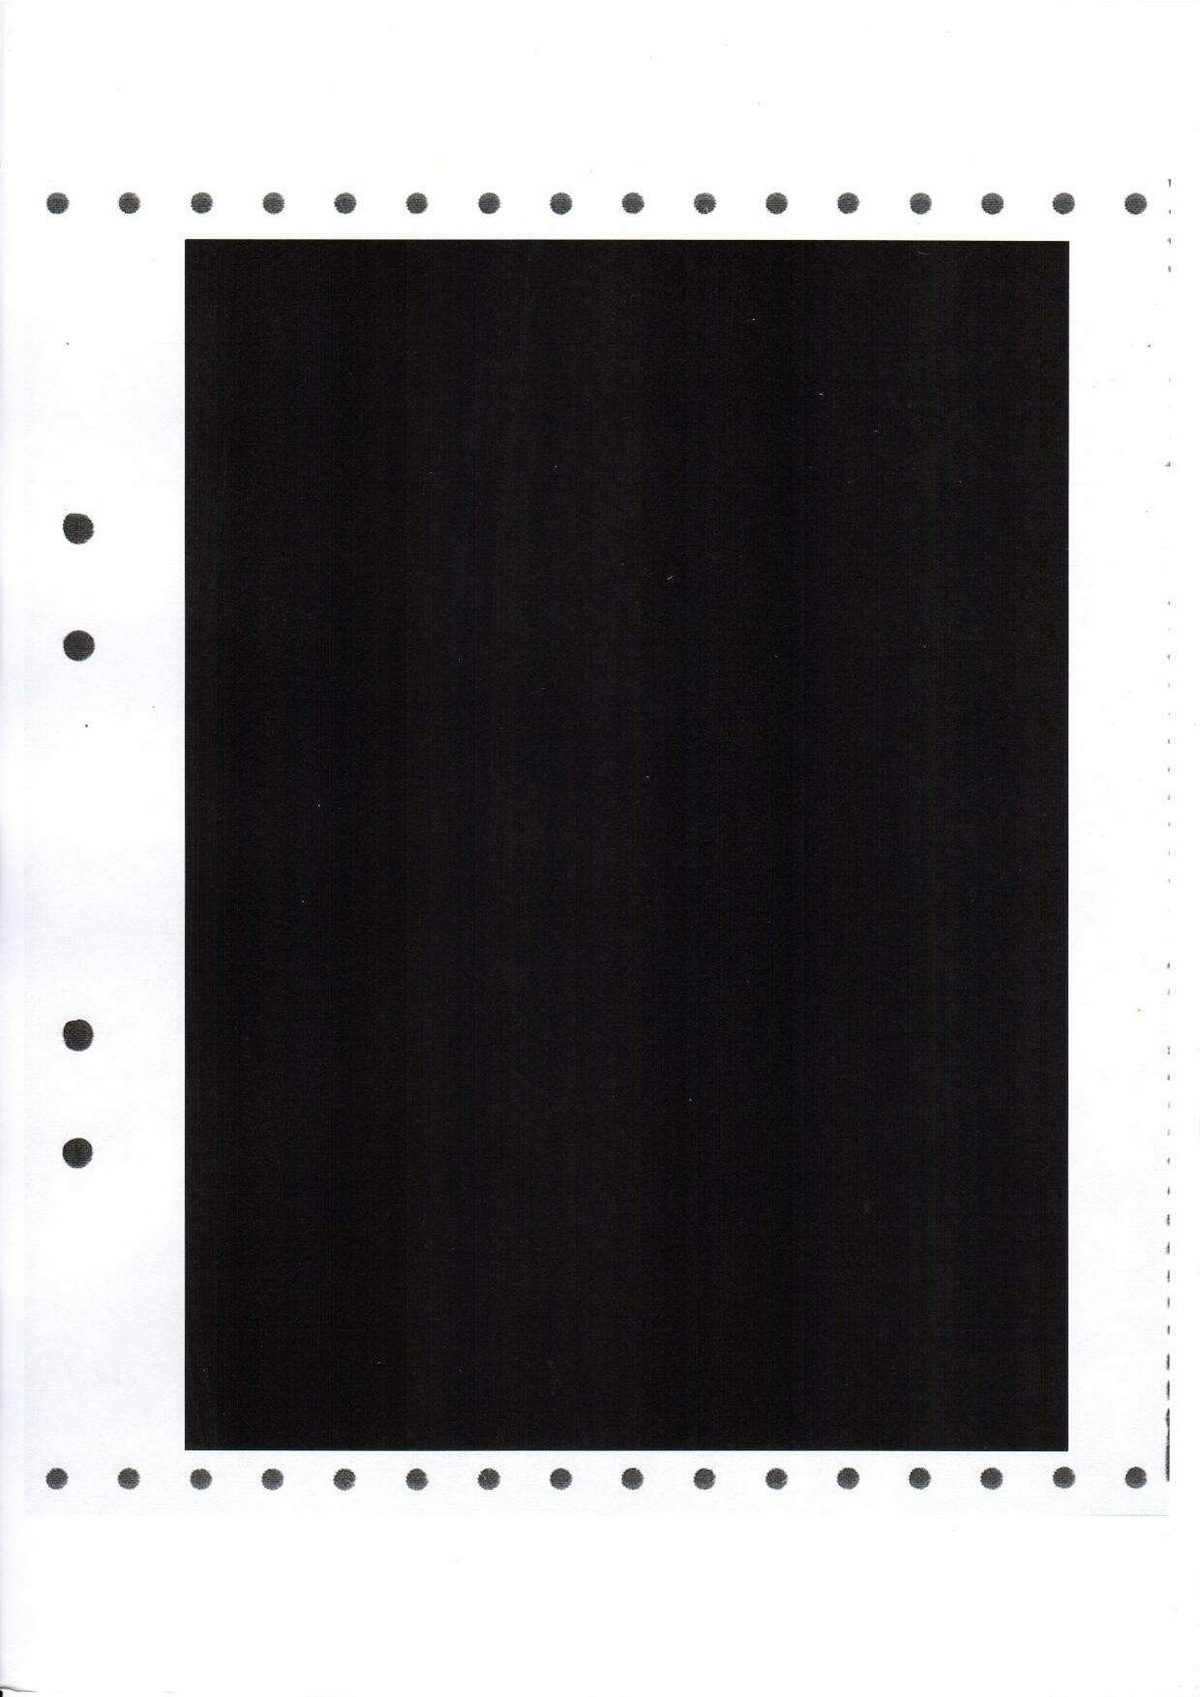 Pol-1986-04-12 1845 D4411-00 Erkännanden Palmemordet sidorna 1-39 sidorna 28-35.pdf